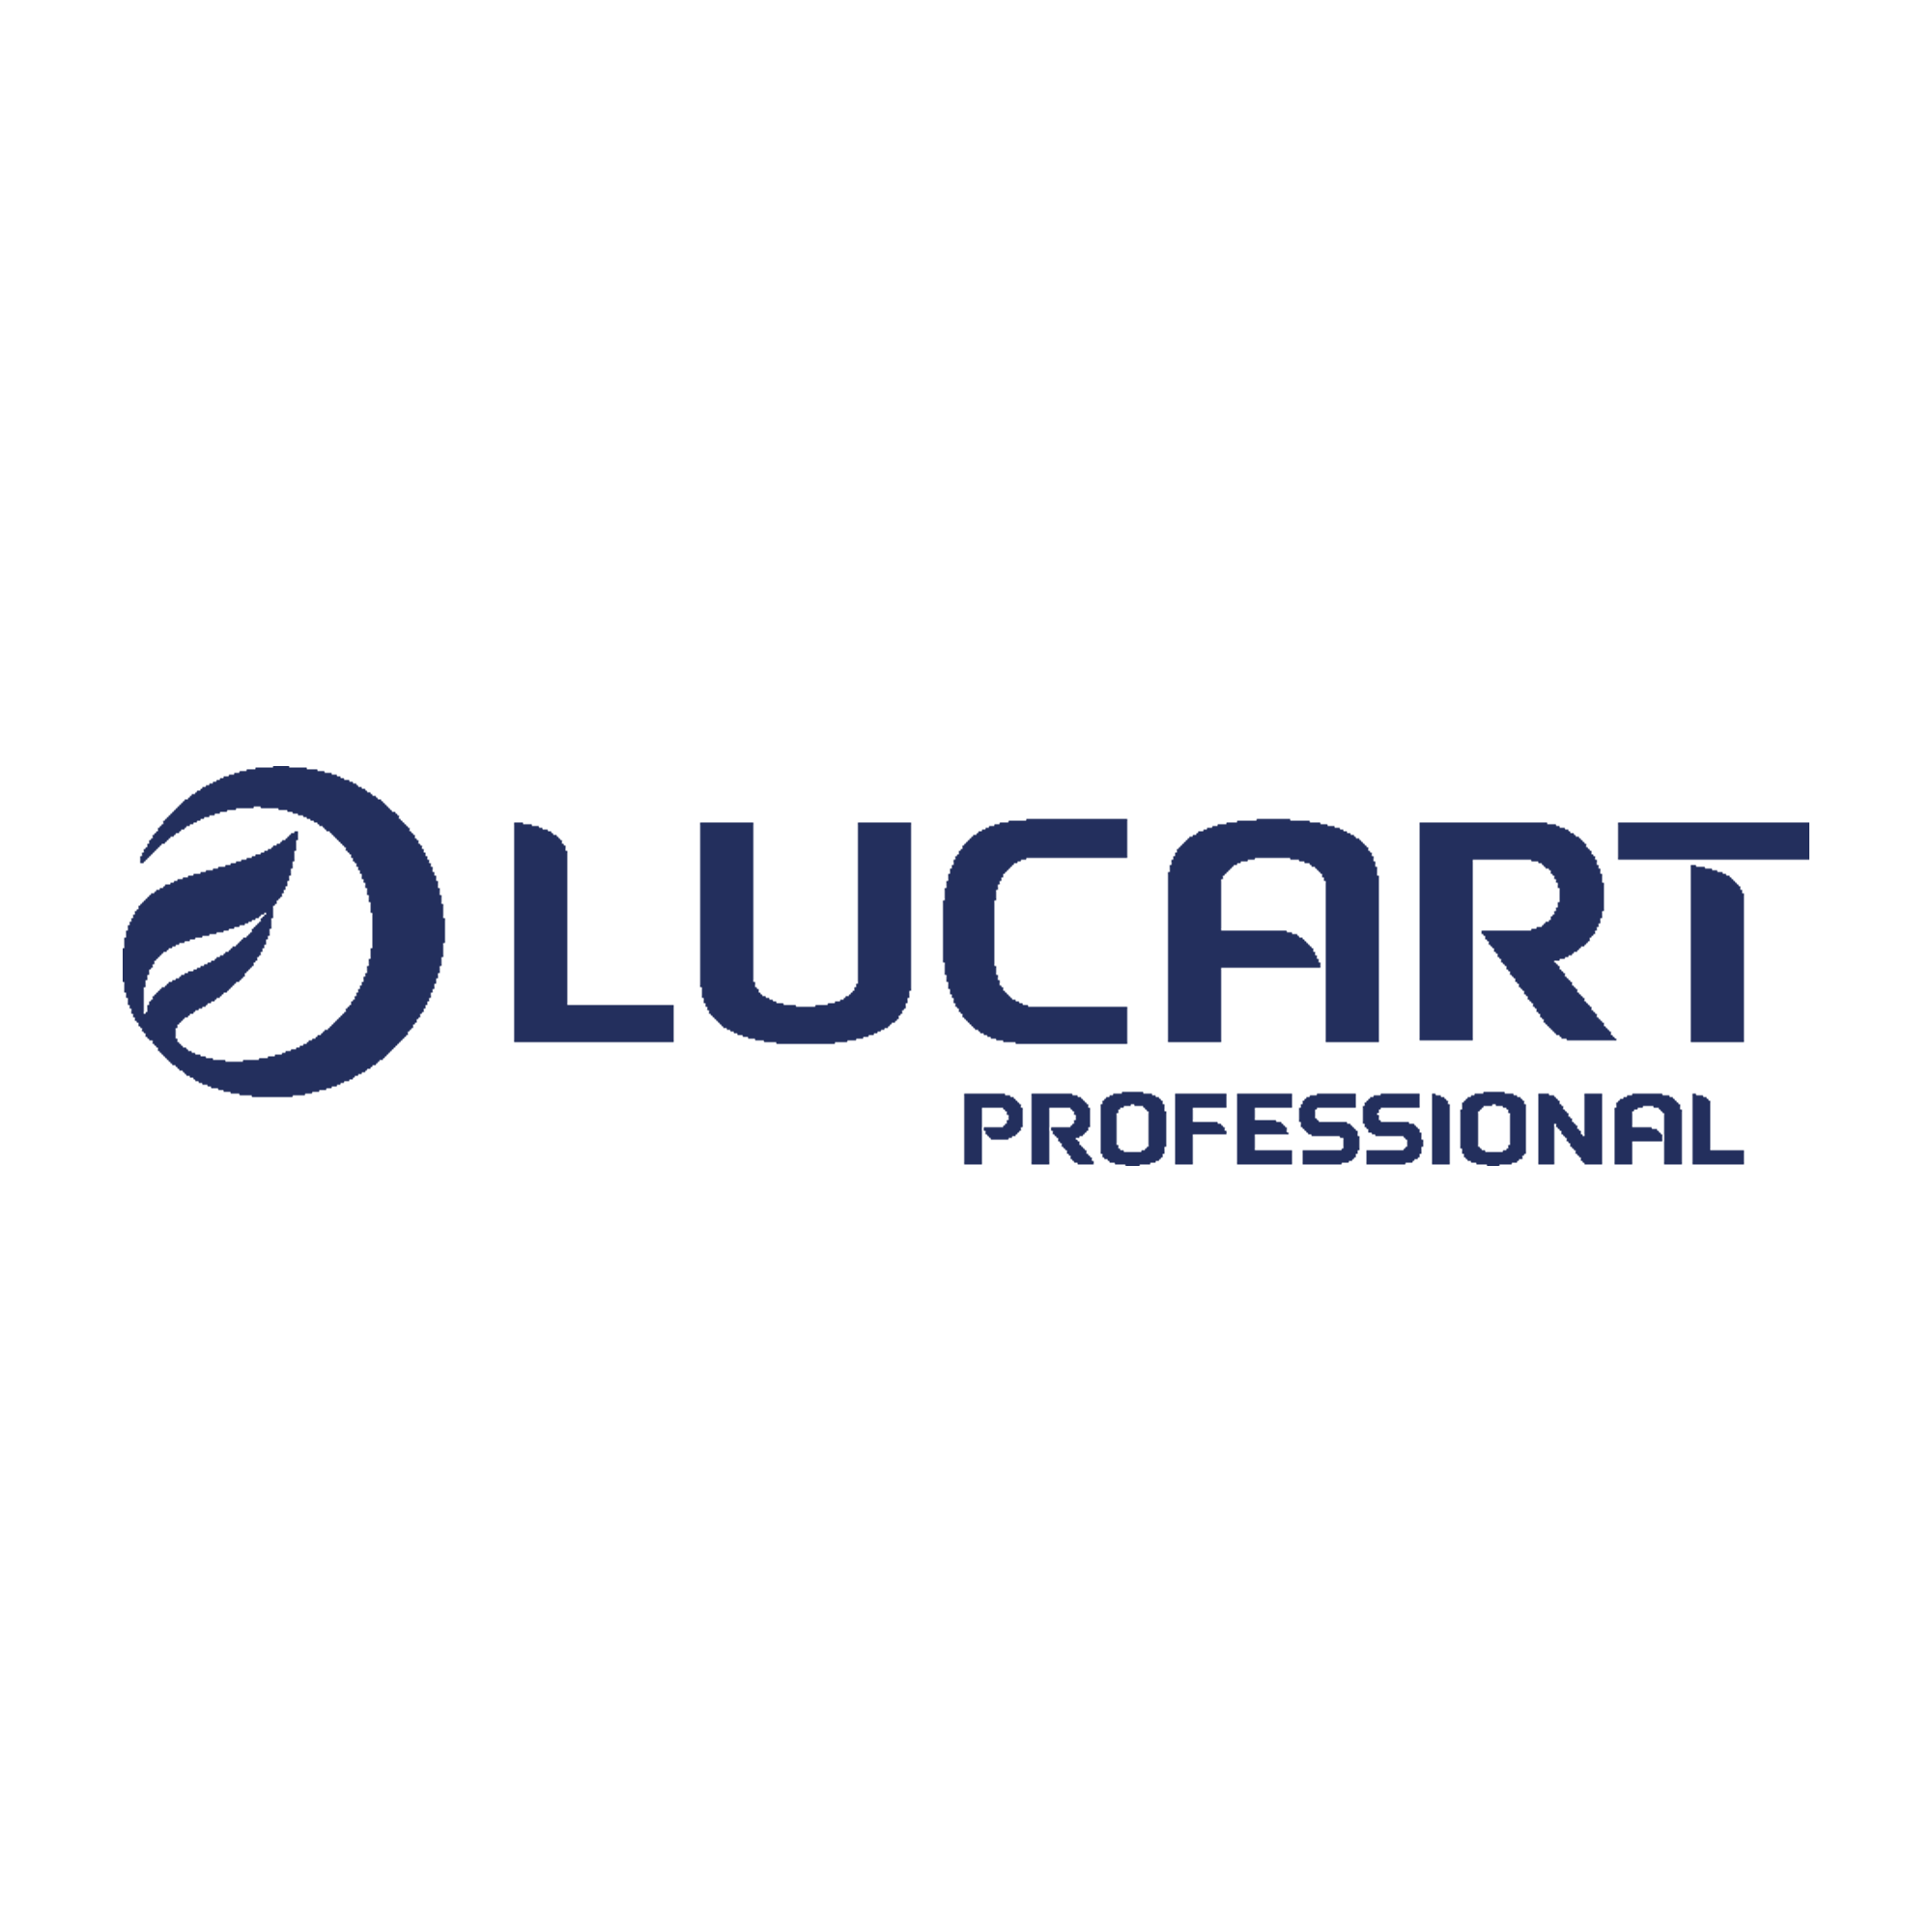 Lucart Strong 80 Joint orvosi papírlepedő